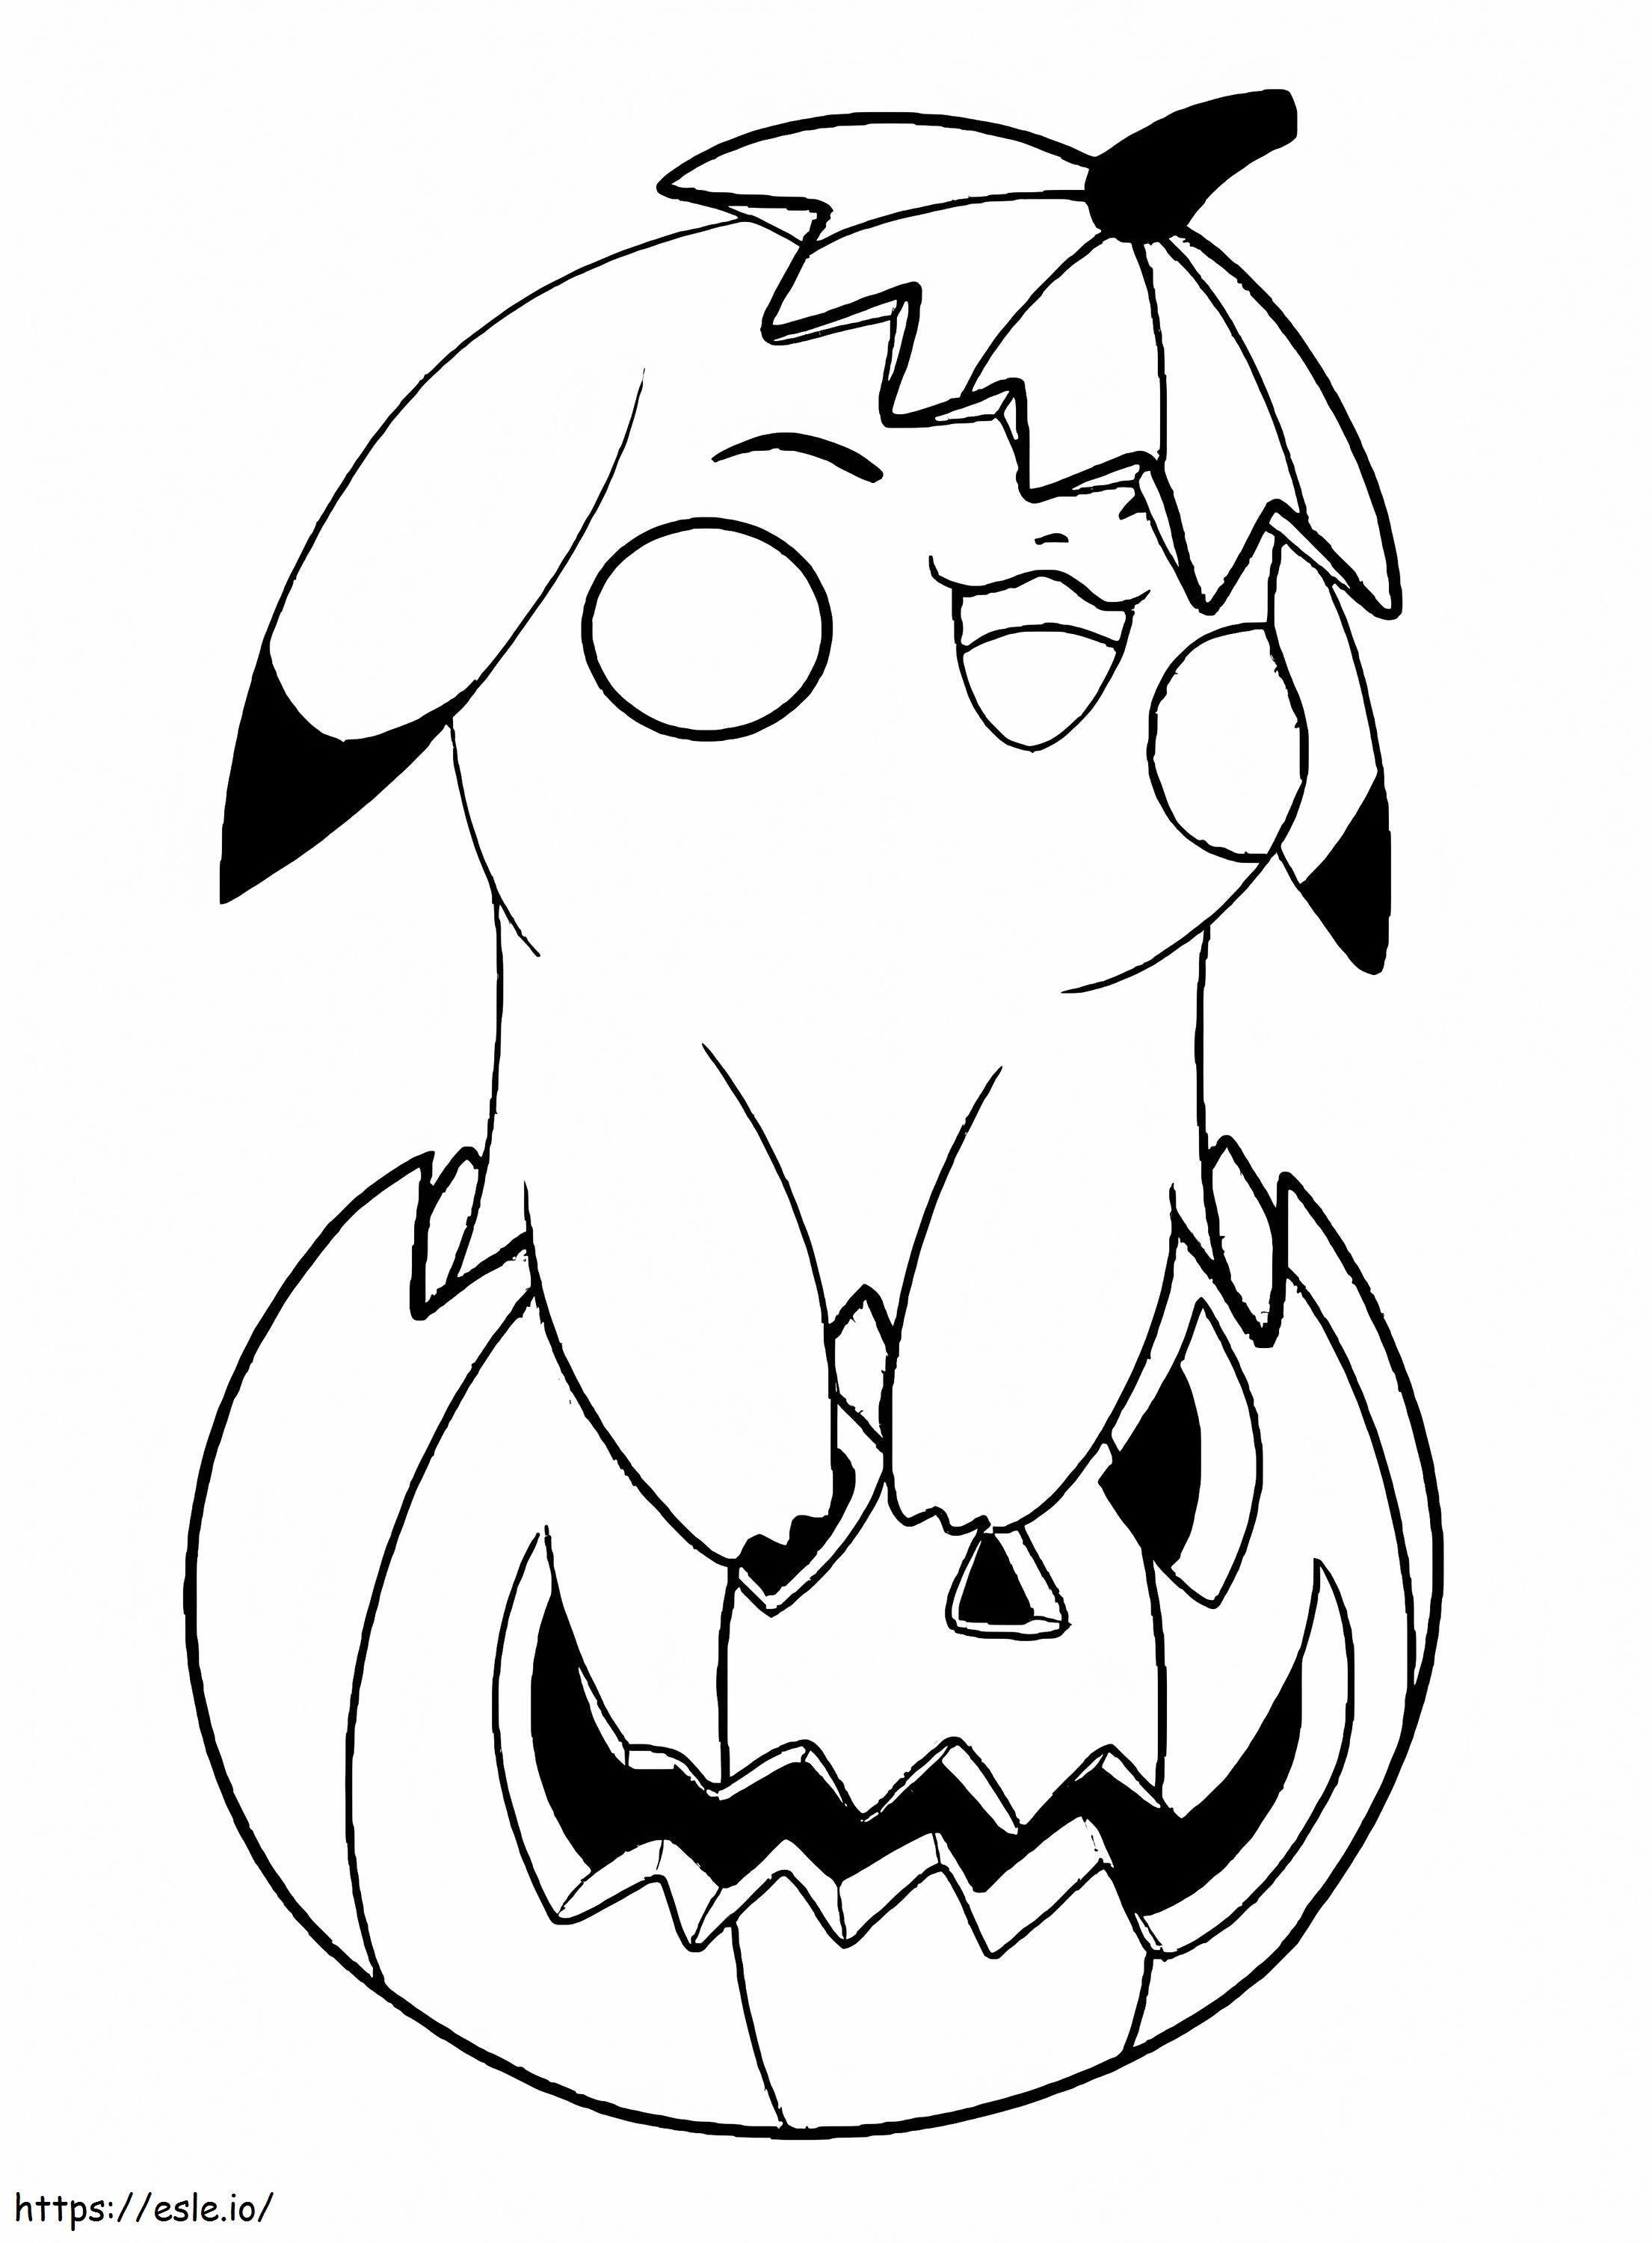 Pikachu e zucca di Halloween da colorare